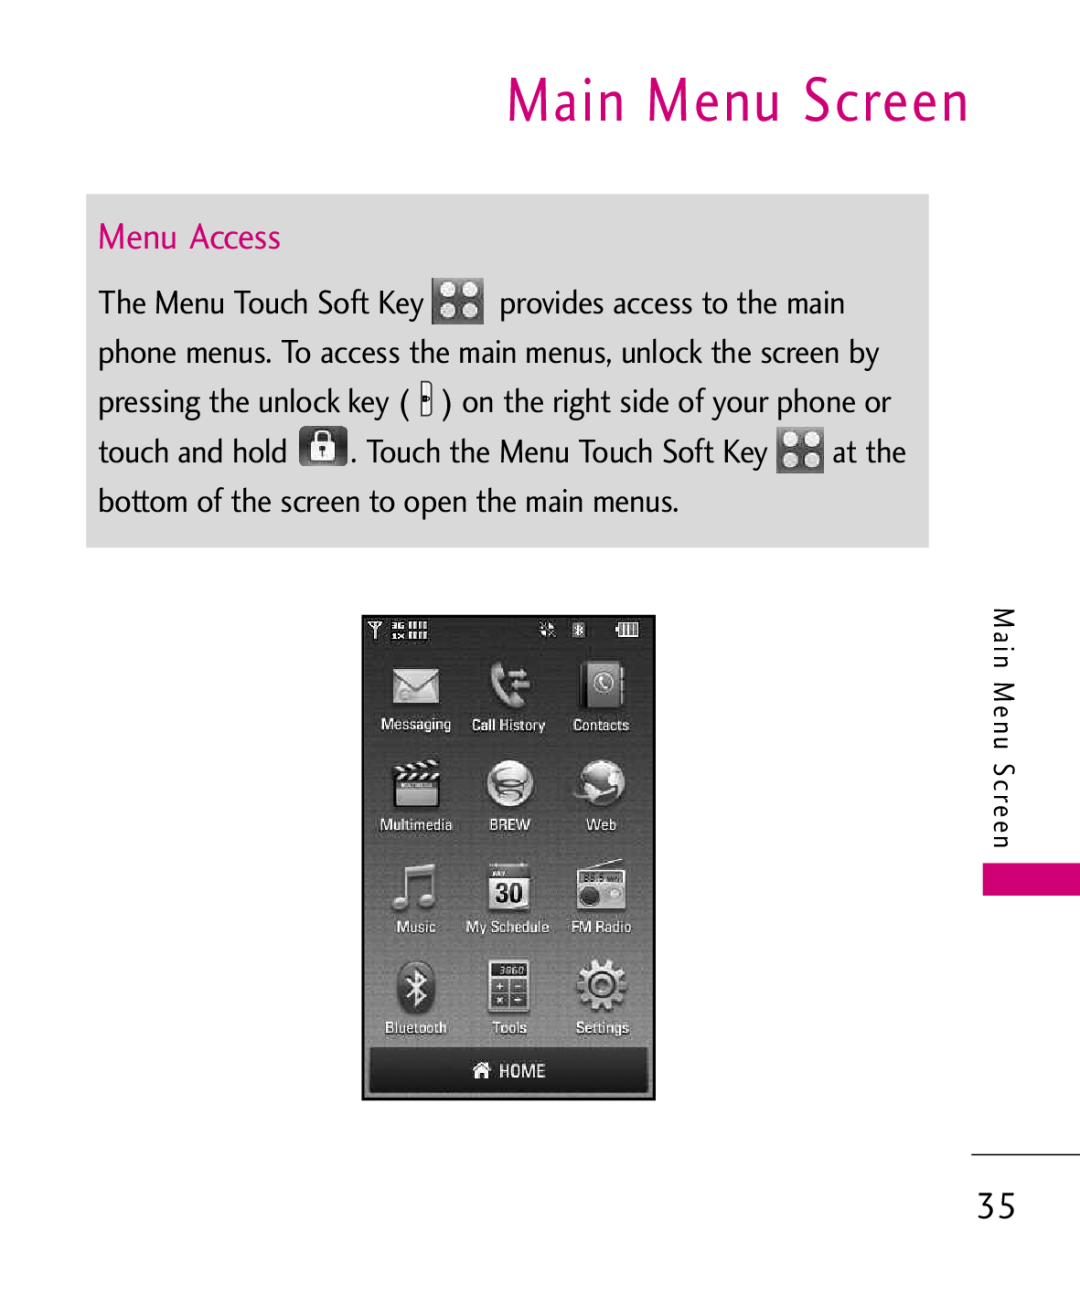 LG Electronics MMBB0379501 manual Main Menu Screen, M a i n M e n u S c re e n 